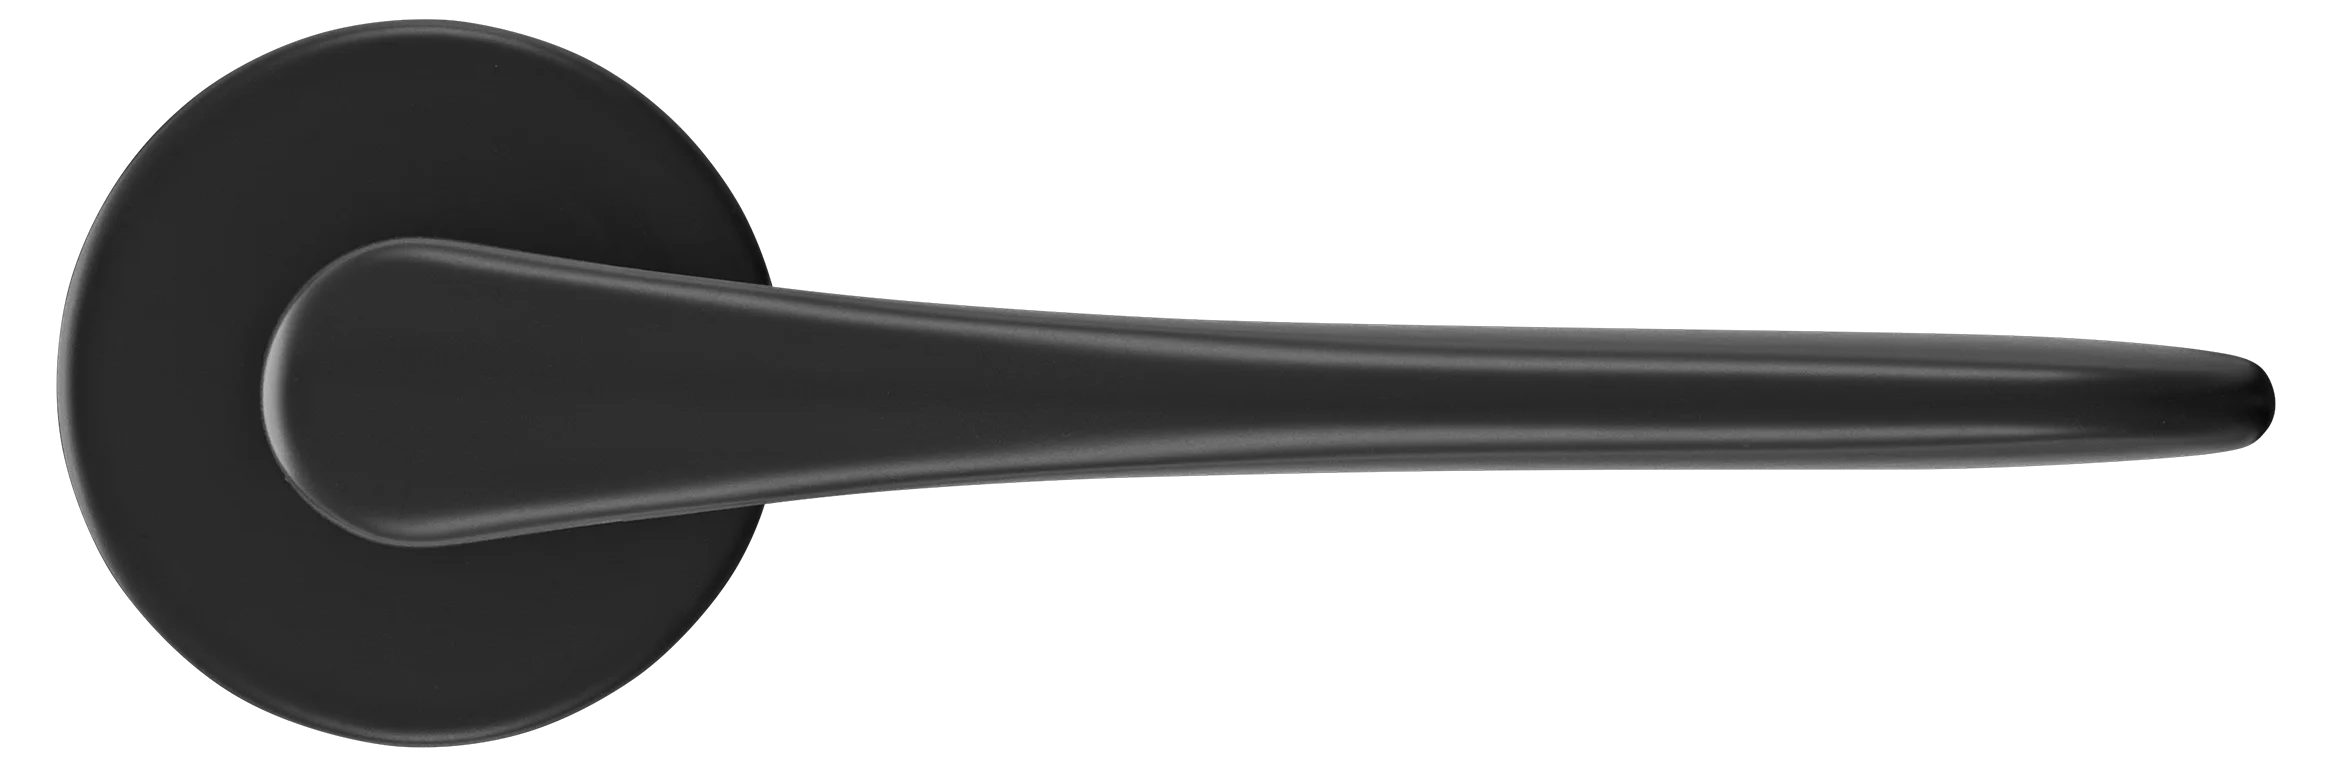 AULA R5 NERO, ручка дверная на розетке 7мм, цвет -  черный фото купить в Краснодаре